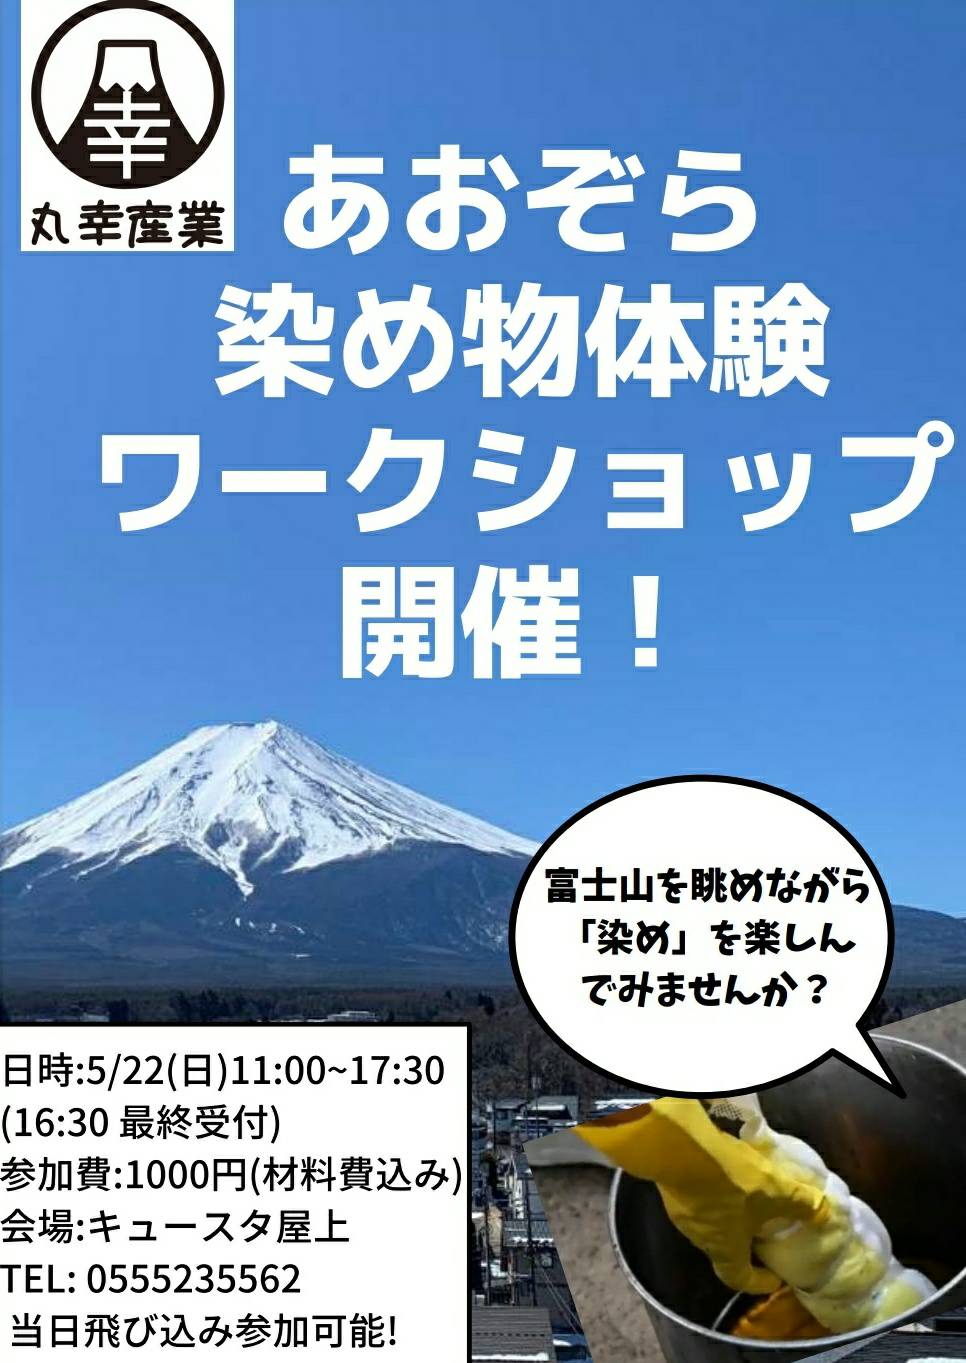 5/22(日)富士山駅屋上で染め物体験会します!